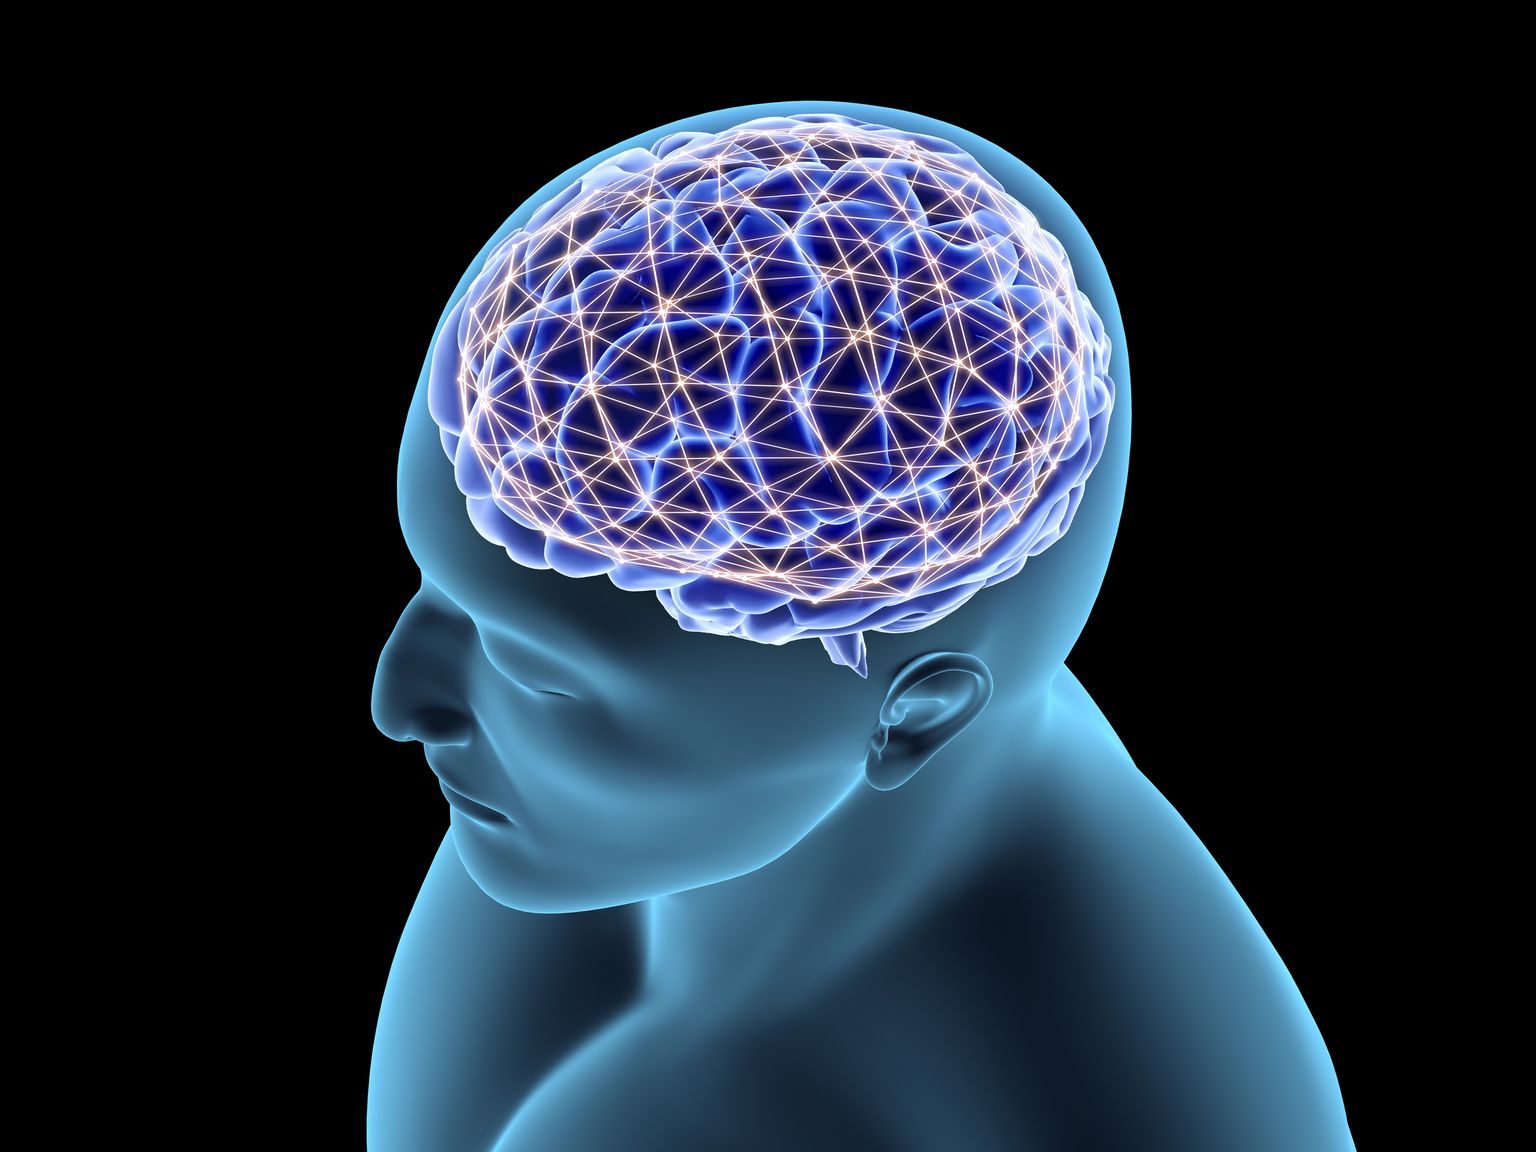 Virgatsainet sisaldava kattepolümeeriga kaetud elektroodide kasutamine ajukoes võimaldab jälgida aju närvirakkude tegevust ning tuvastada aju- või närvisüsteemihaigusi.